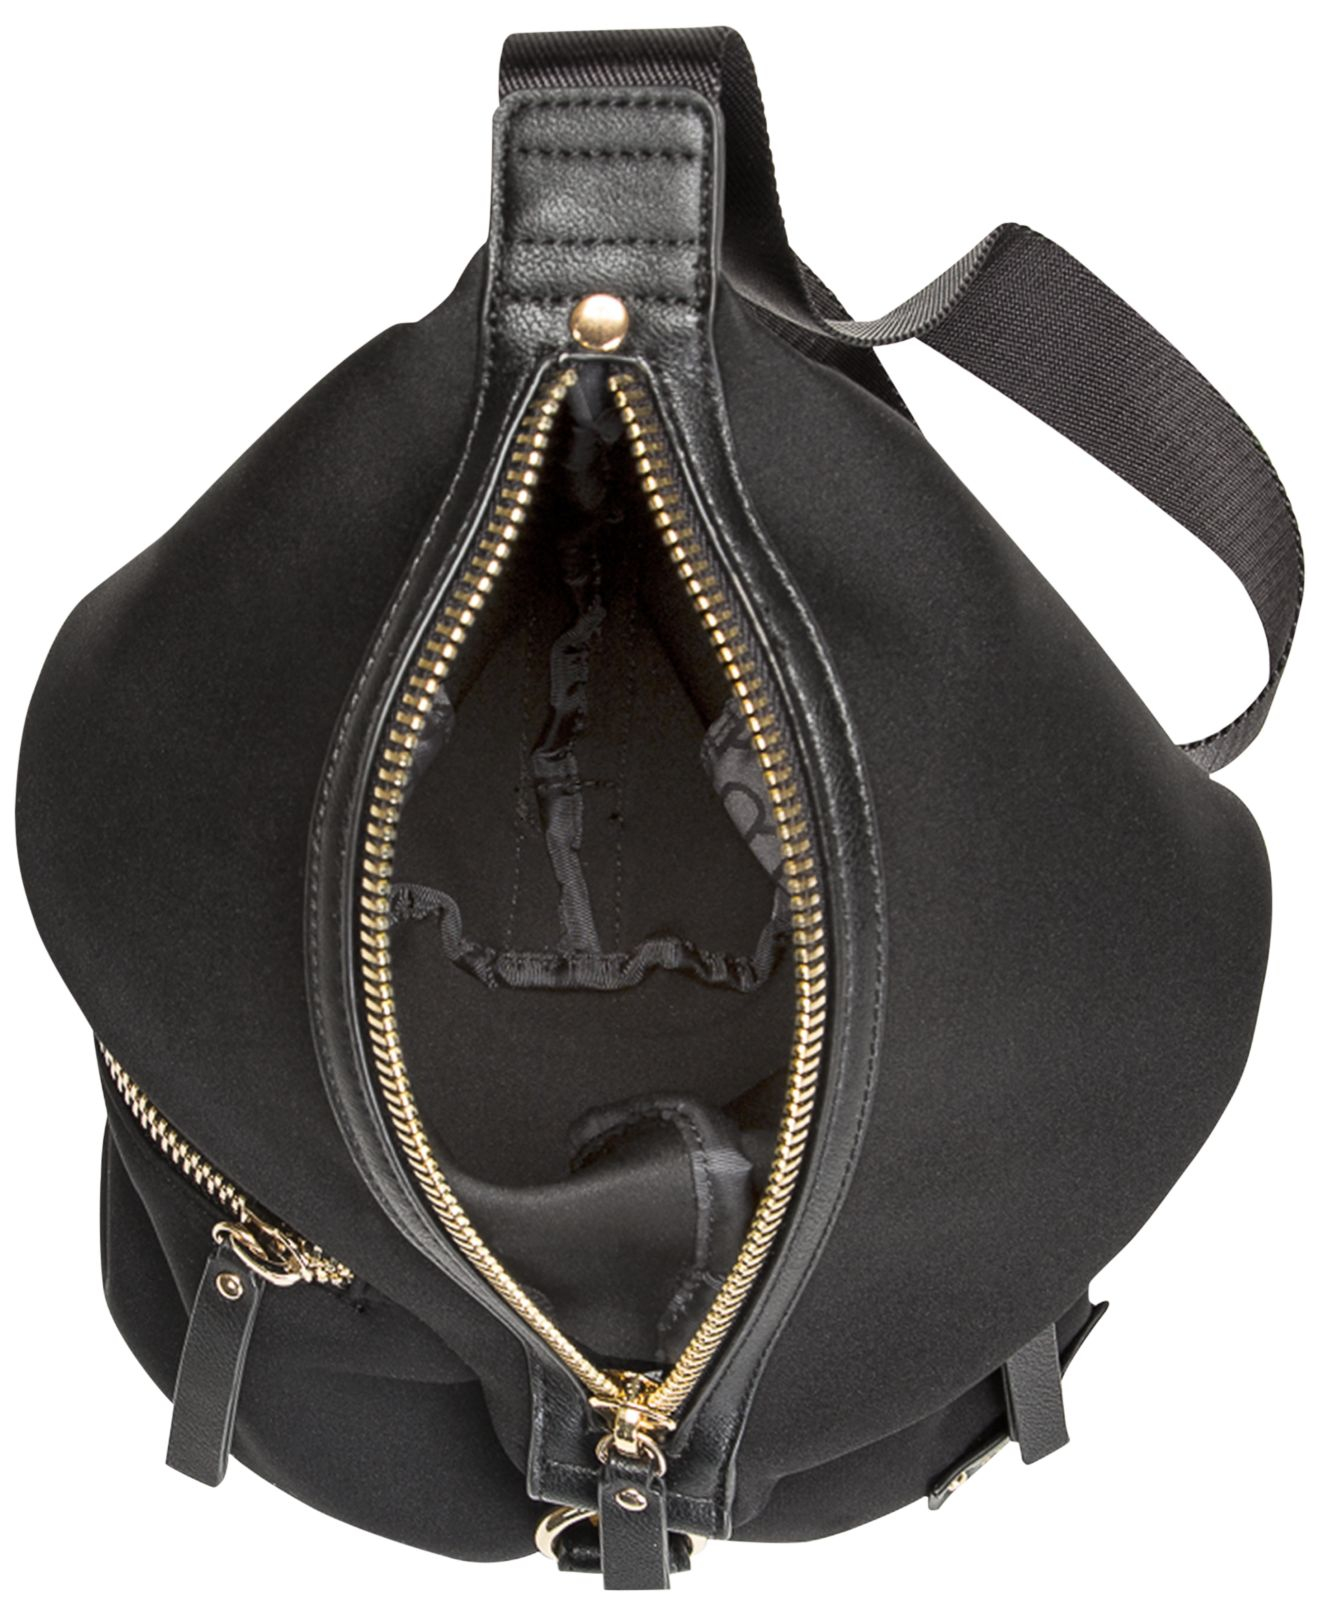 Lyst - Kenneth Cole Reaction Bondi Girl Mini Sling Bag in Black